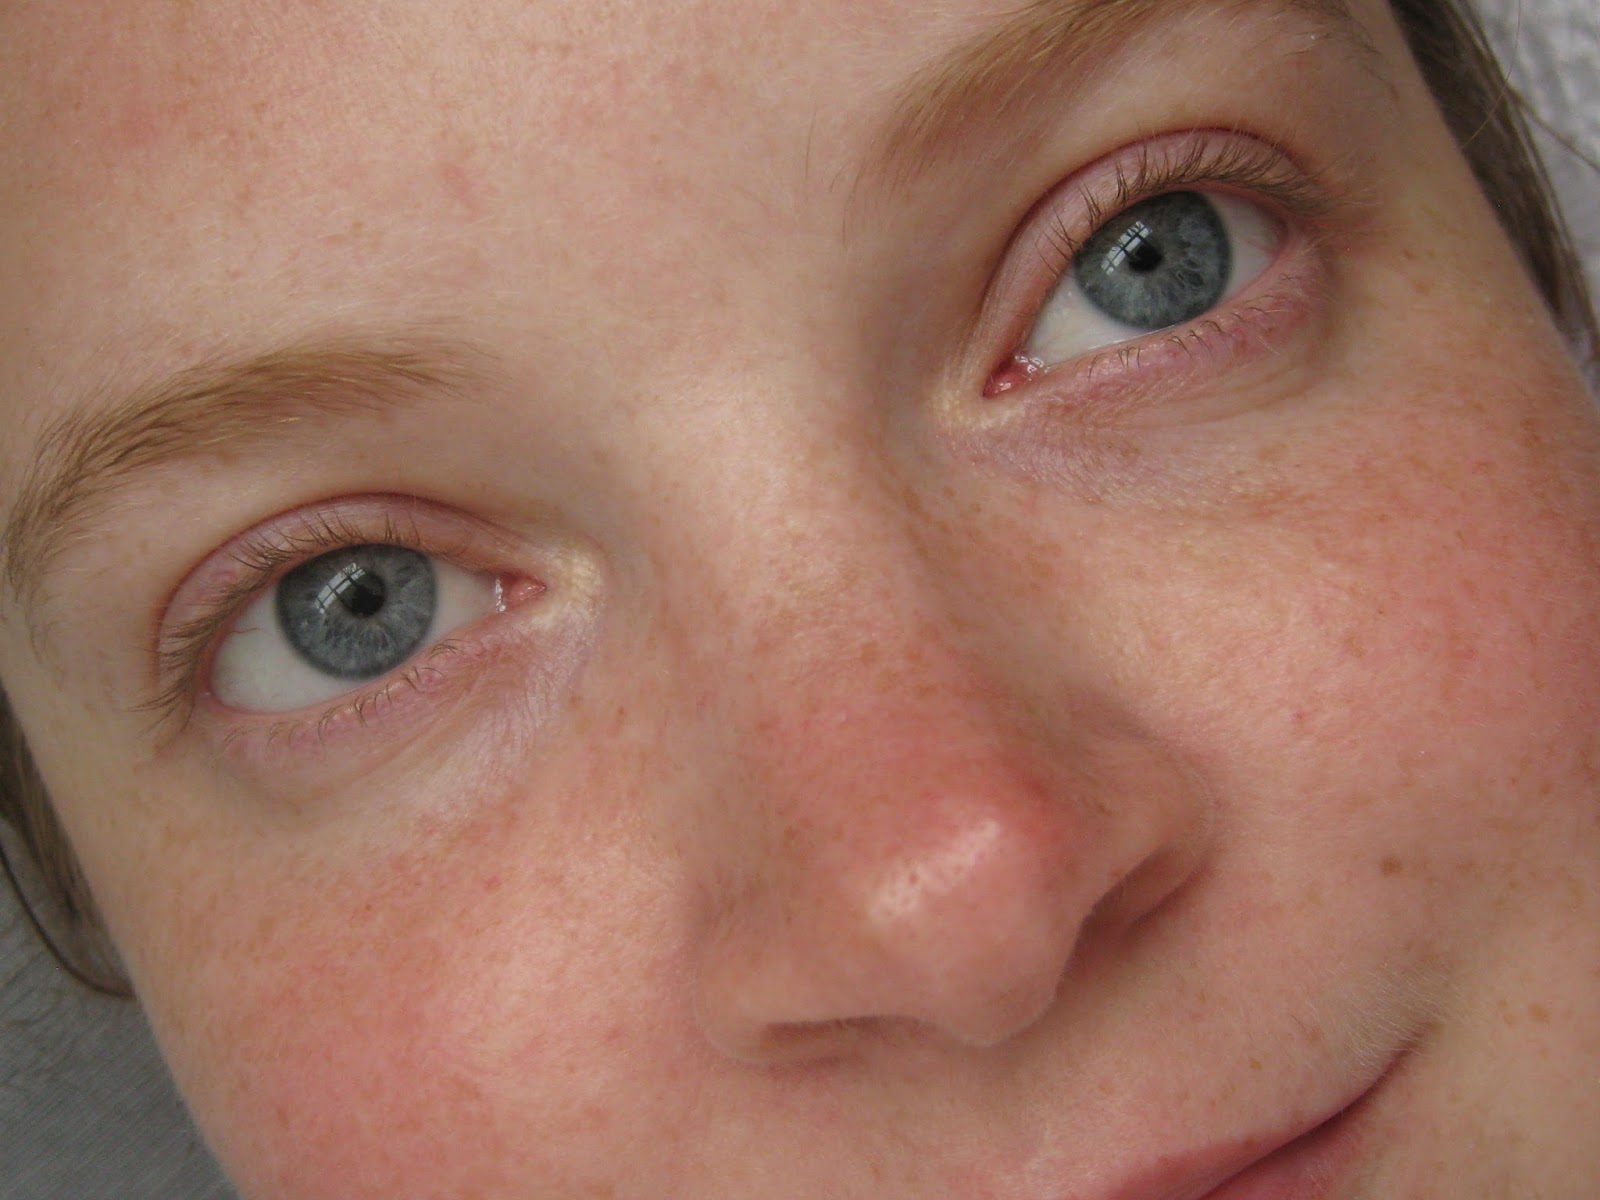 Чешутся уголки глаз - причины и лечение - офтальмологические клиники «эксимер» (киев) – диагностика и лечение заболеваний глаз у взрослых и детей